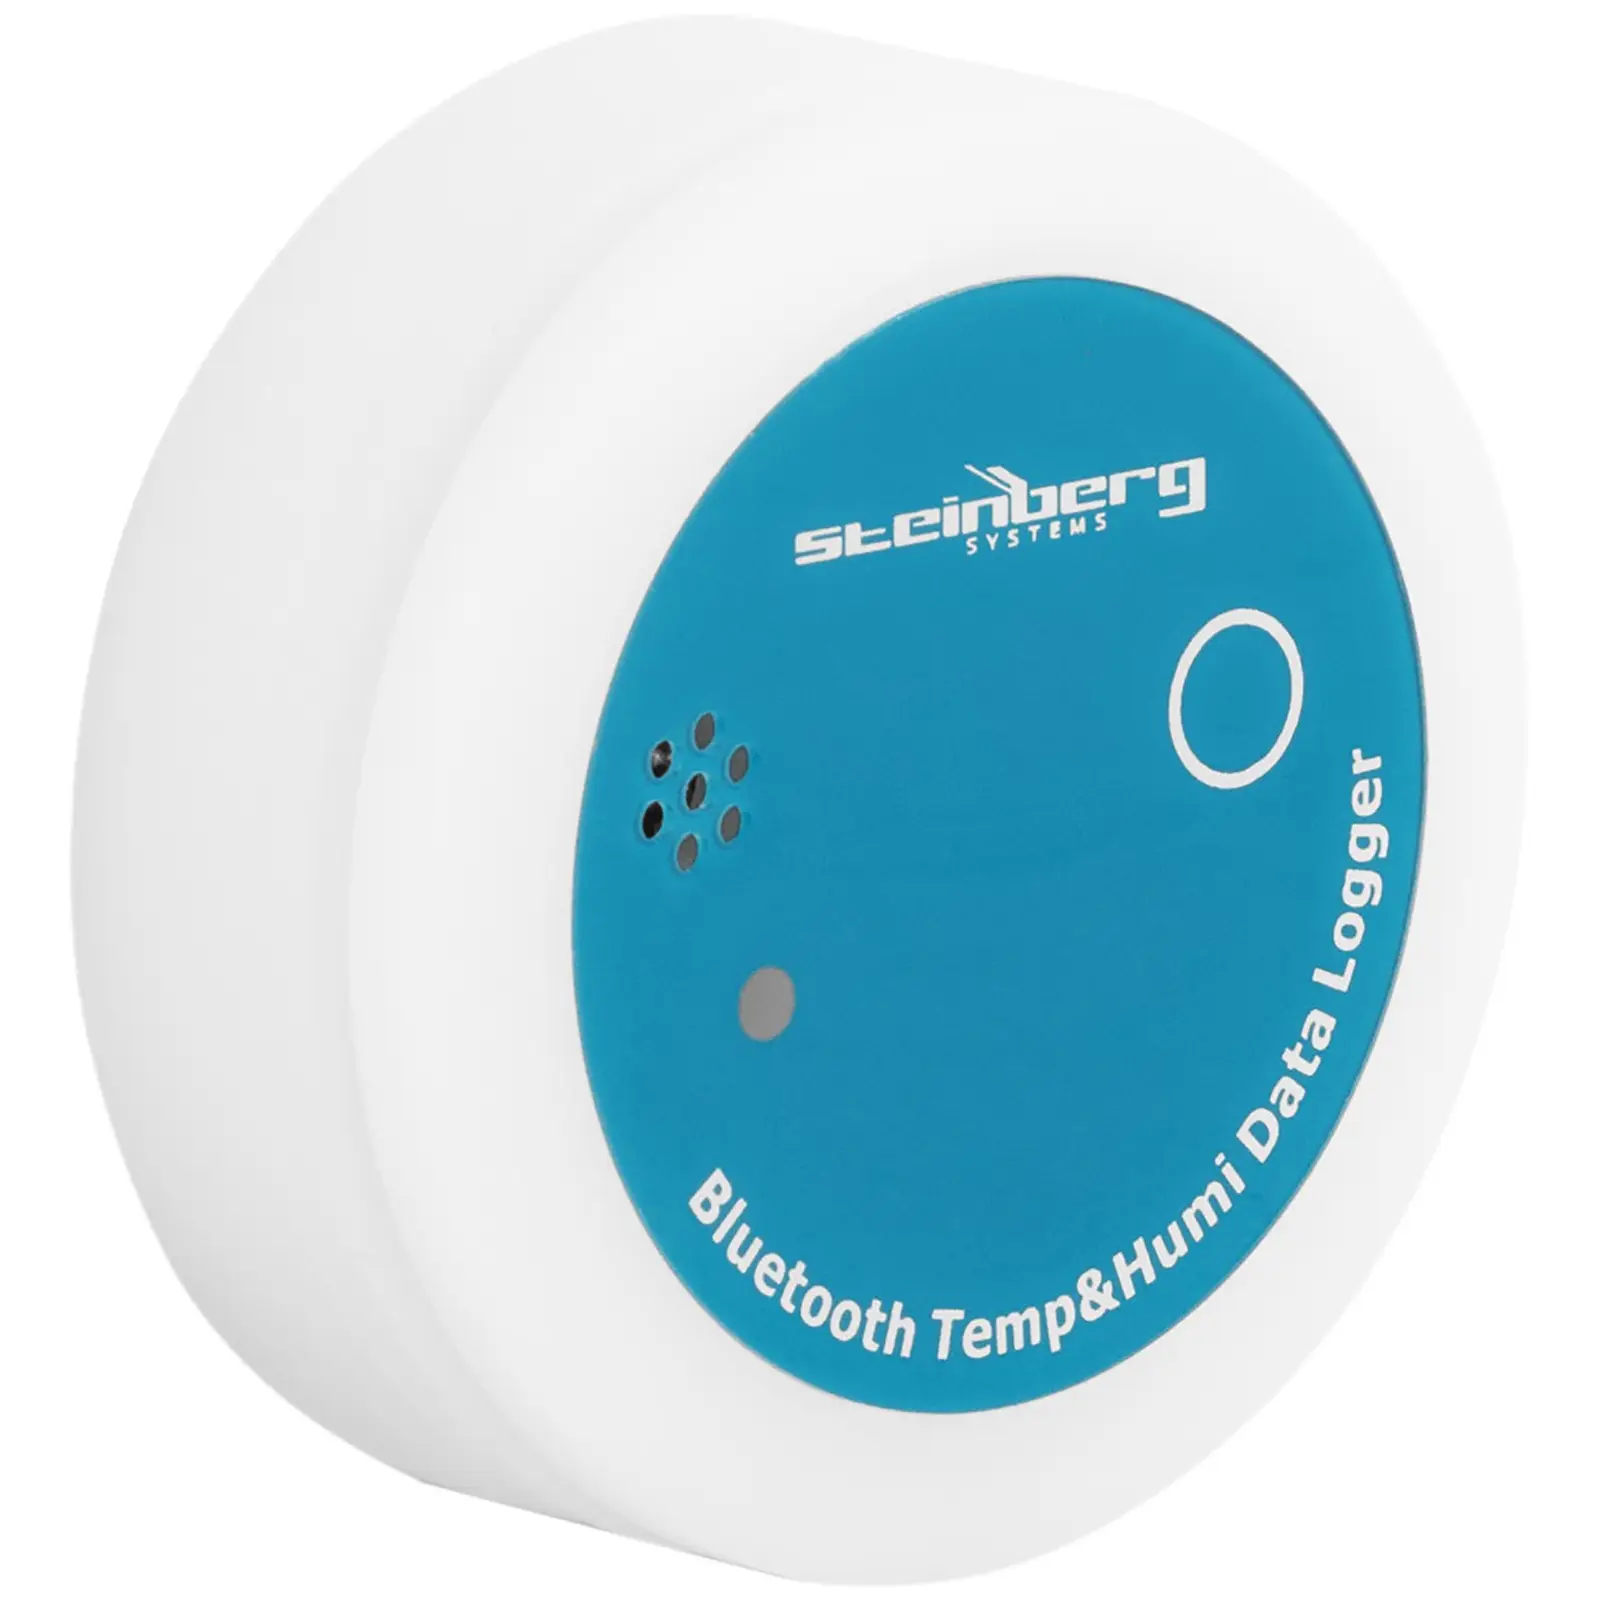 Enregistreur de température et d'humidité connecté - -20 ~ 70 ℃ - 0 ~ 100 % Hr - Bluetooth 4.2 / USB 2.0